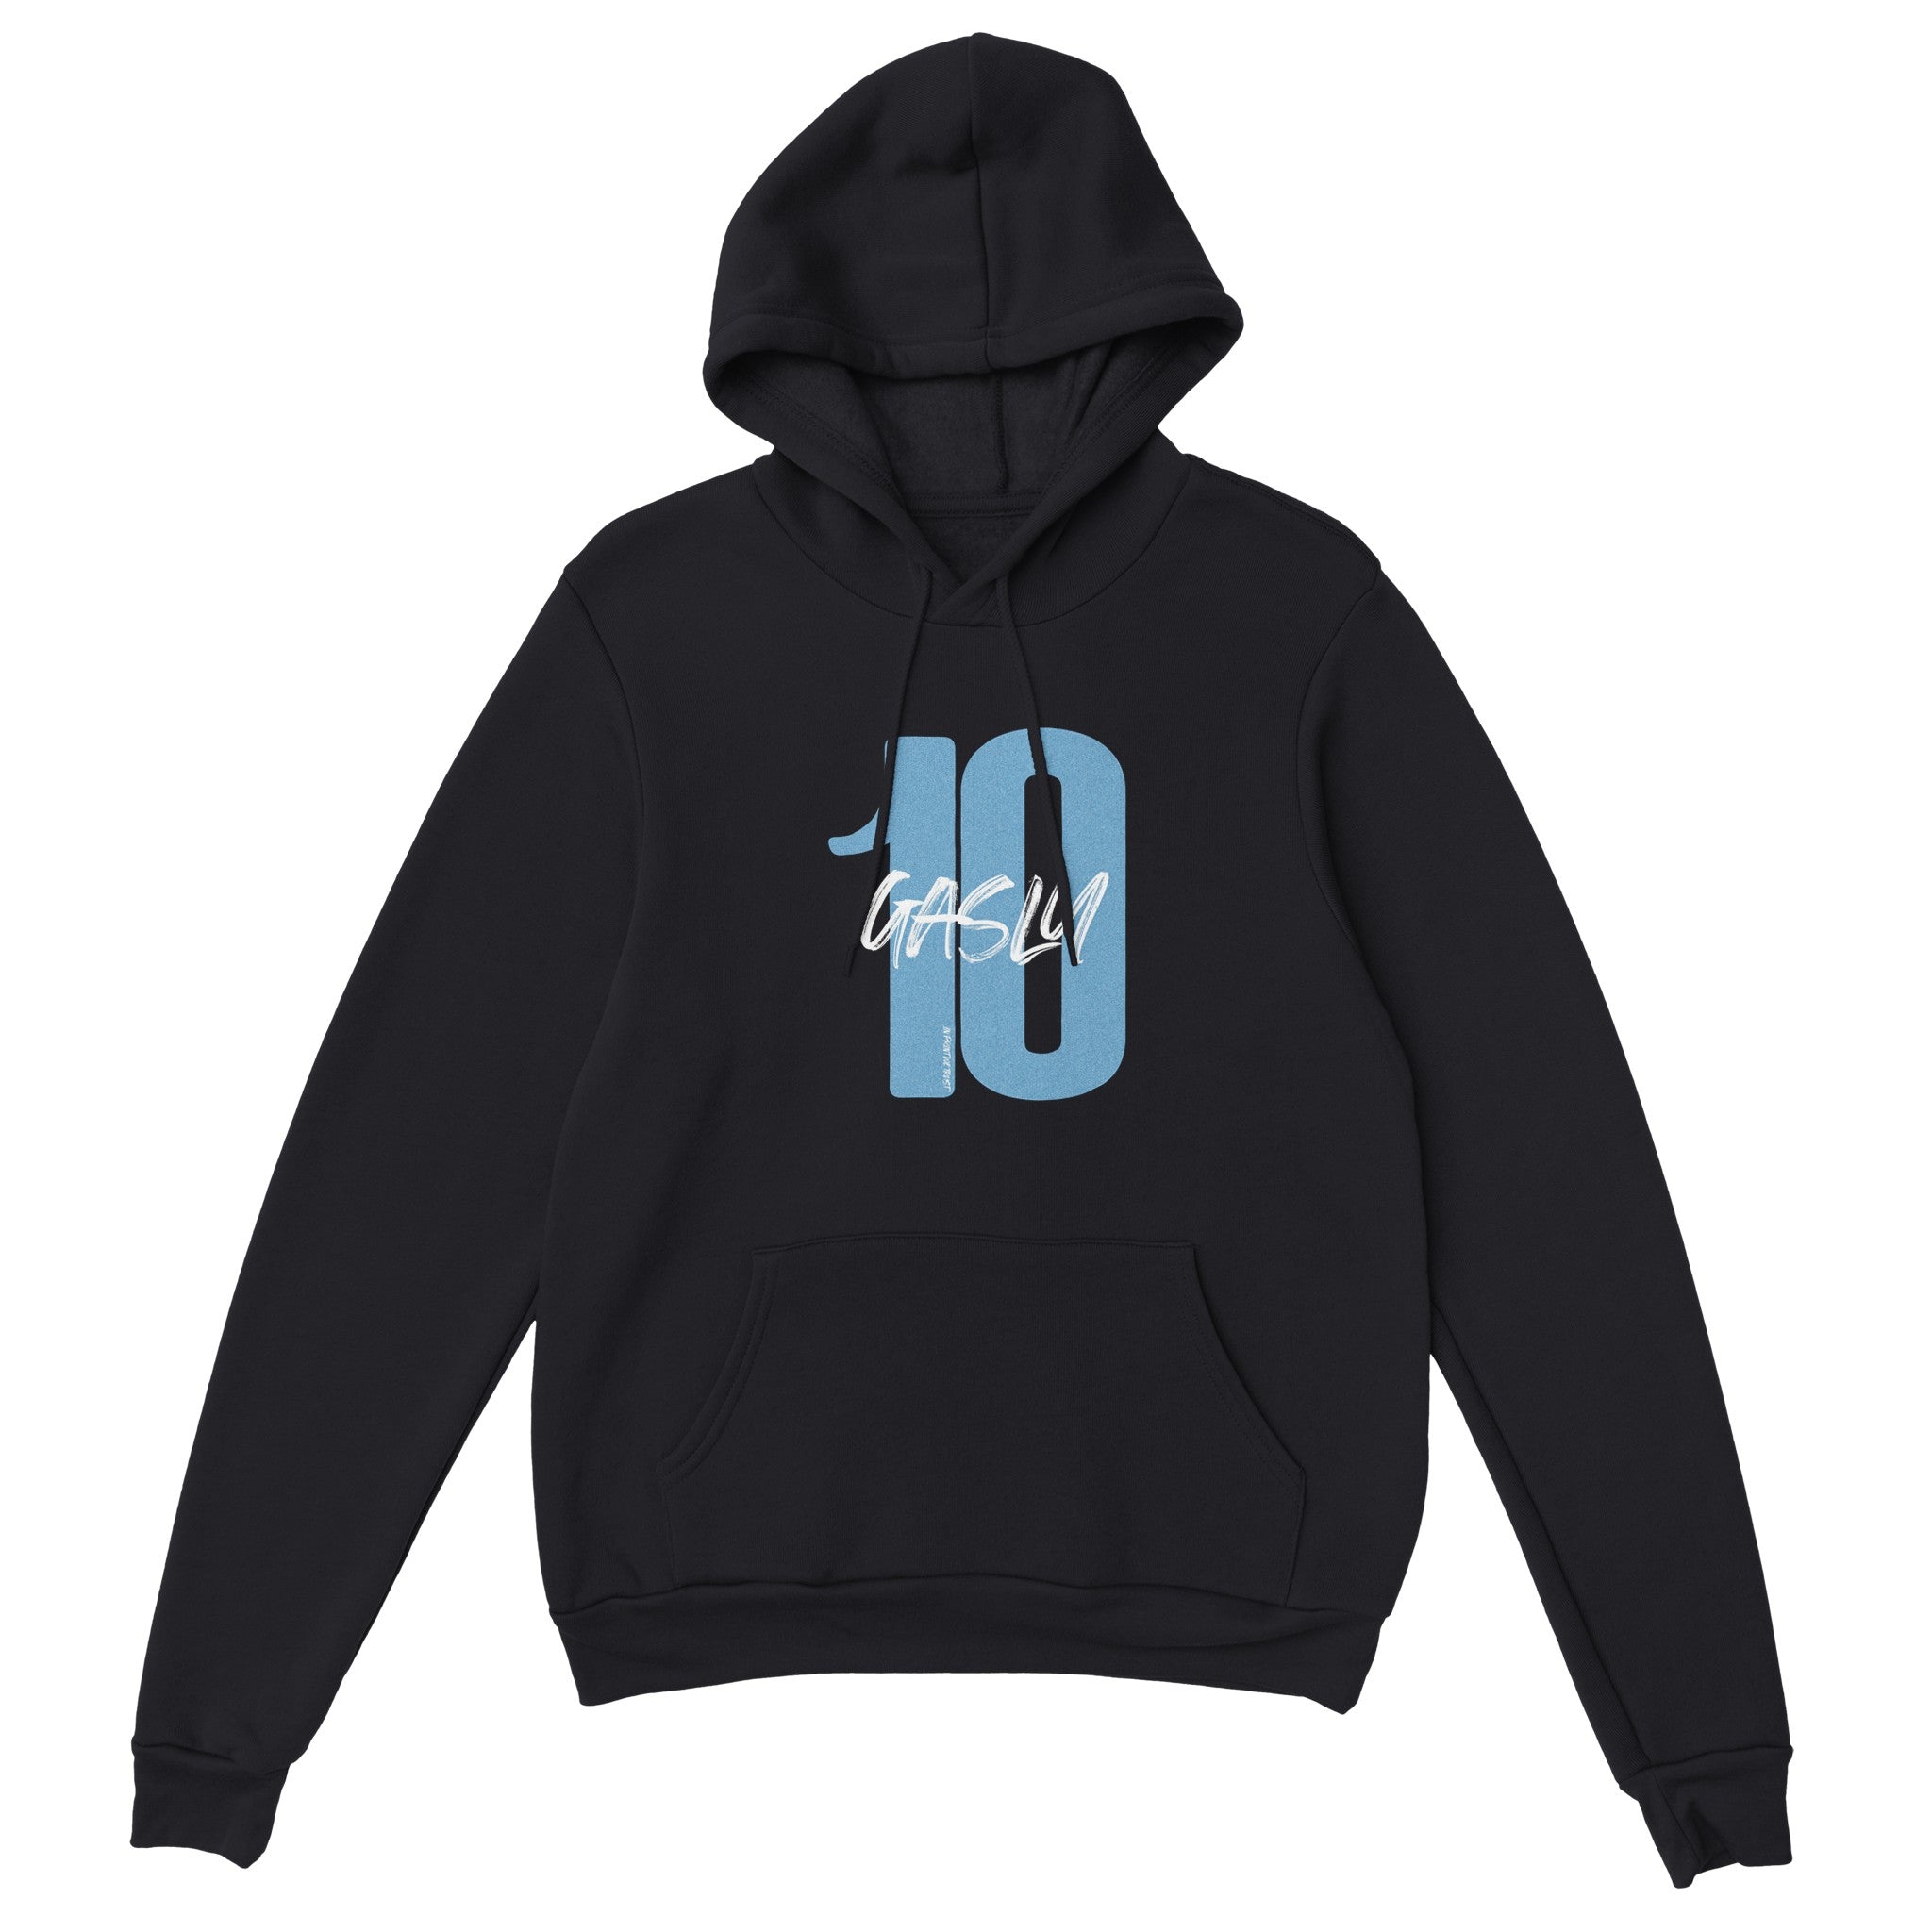 'Gasly 10' hoodie - In Print We Trust